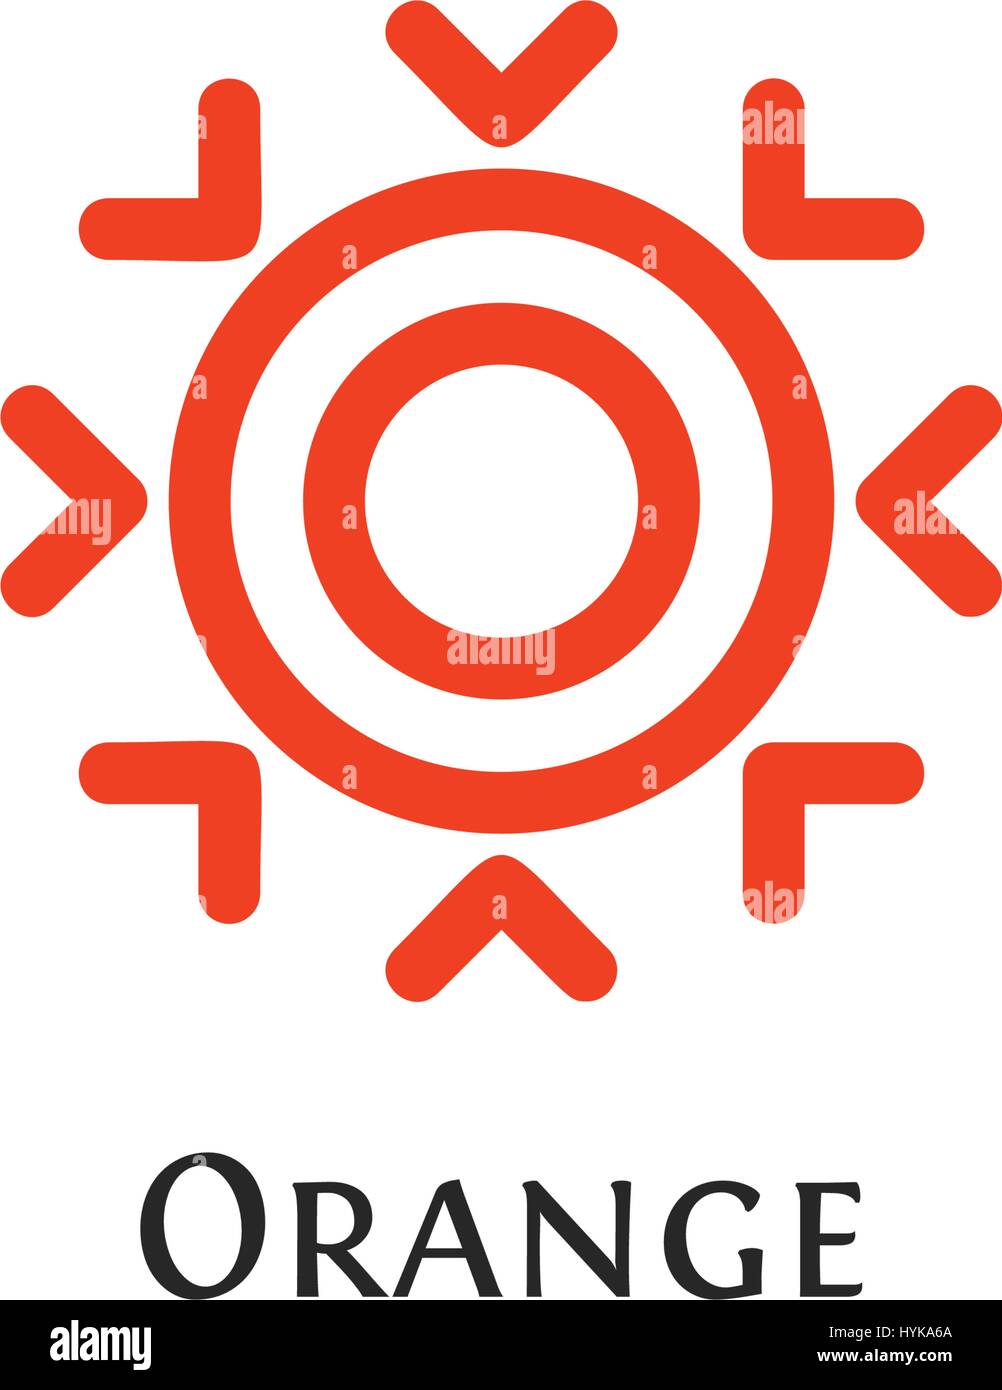 Isolierte abstrakt Runde Form orange Farbe Logo, Schriftzug Sonne, Schneeflocke-Vektor-illustration Stock Vektor